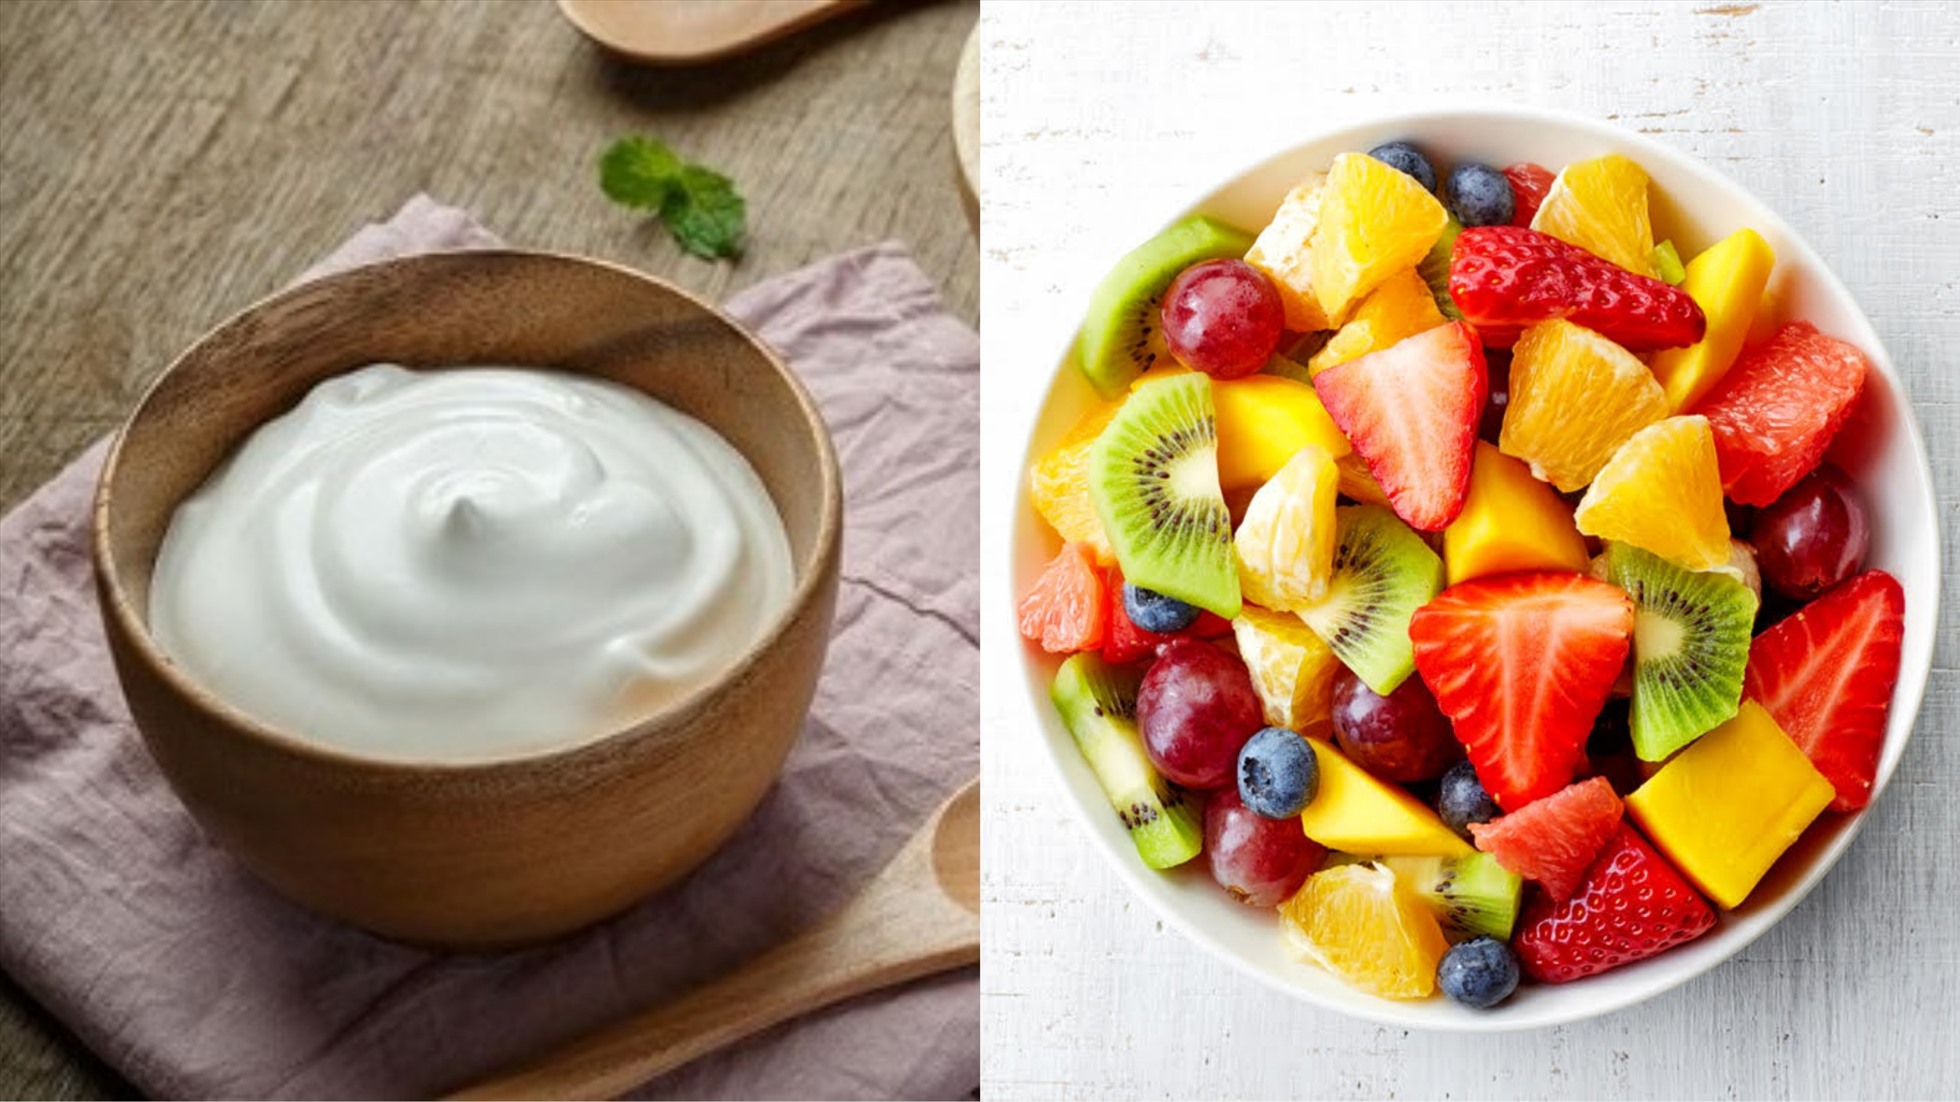 Chọn sữa chua ít béo hoặc không chất béo, ăn kèm cùng một ít trái cây sẽ giúp bạn kiểm soát cholesterol (Ảnh đồ họa: Hàn Lâm)